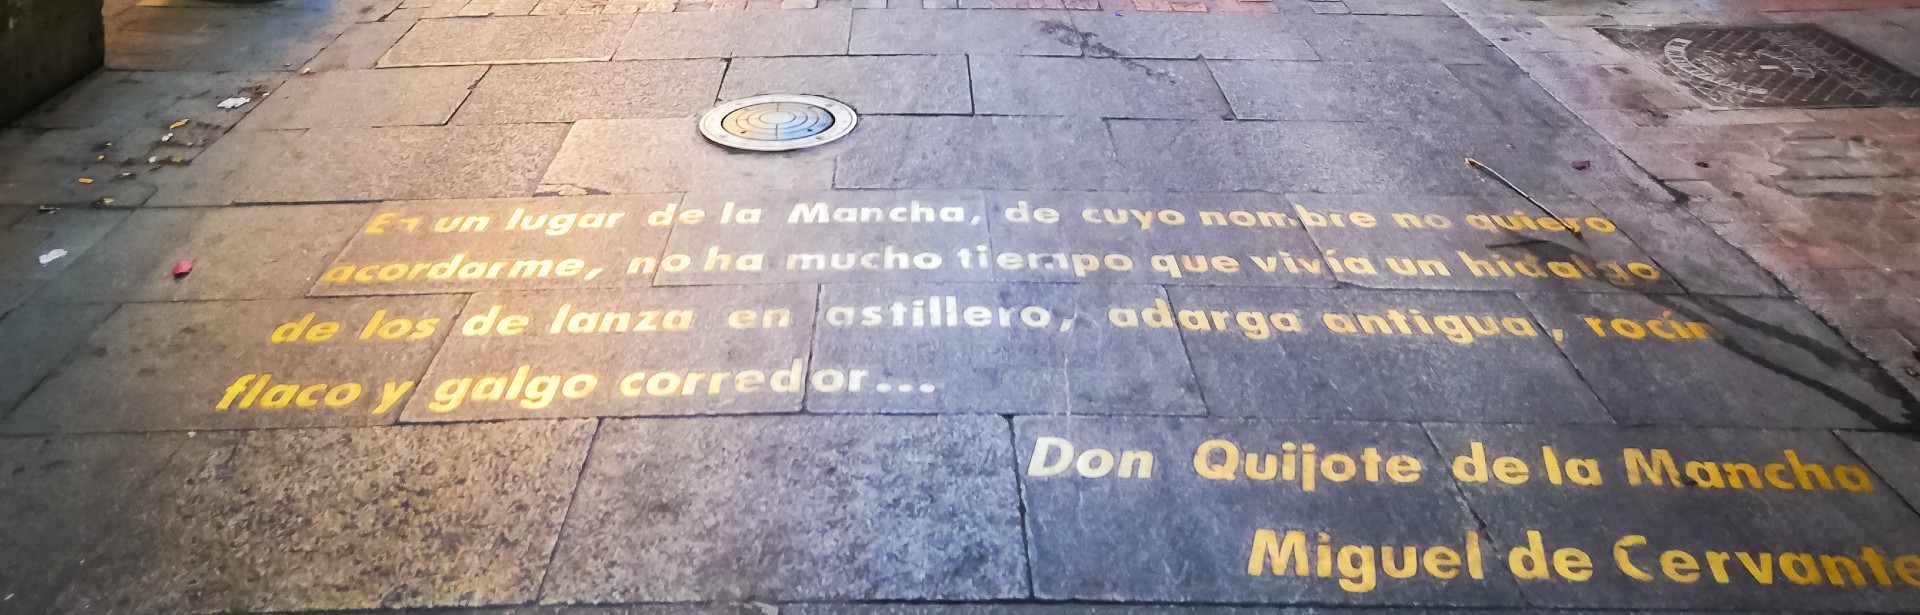 Don Quijote idézet